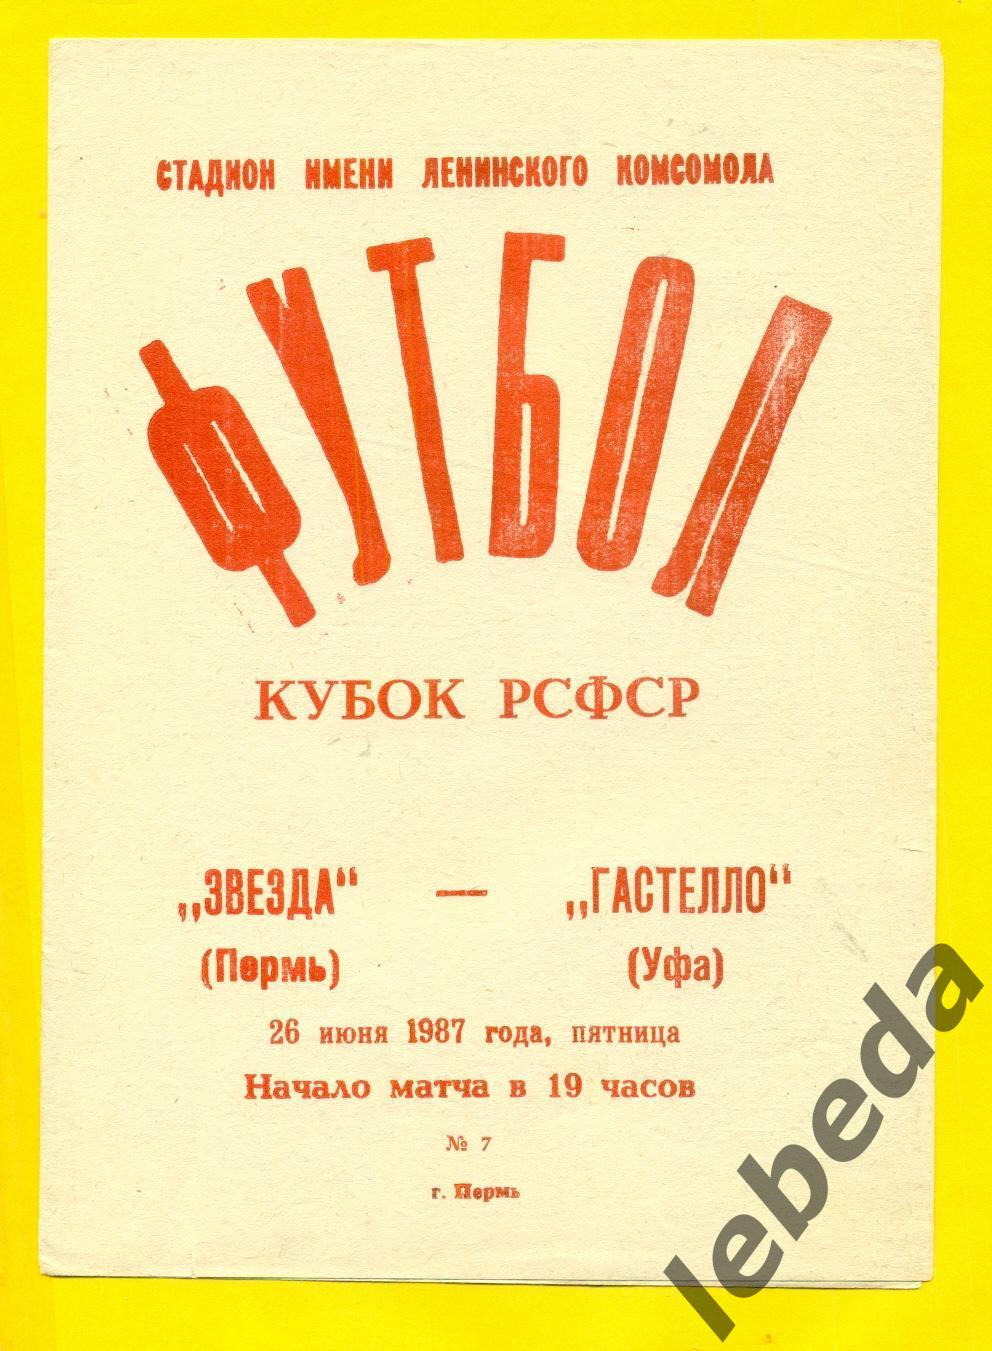 Звезда Пермь - Гастелло Уфа - 1987 г. ( 26.06.87.) Кубок РСФСР.